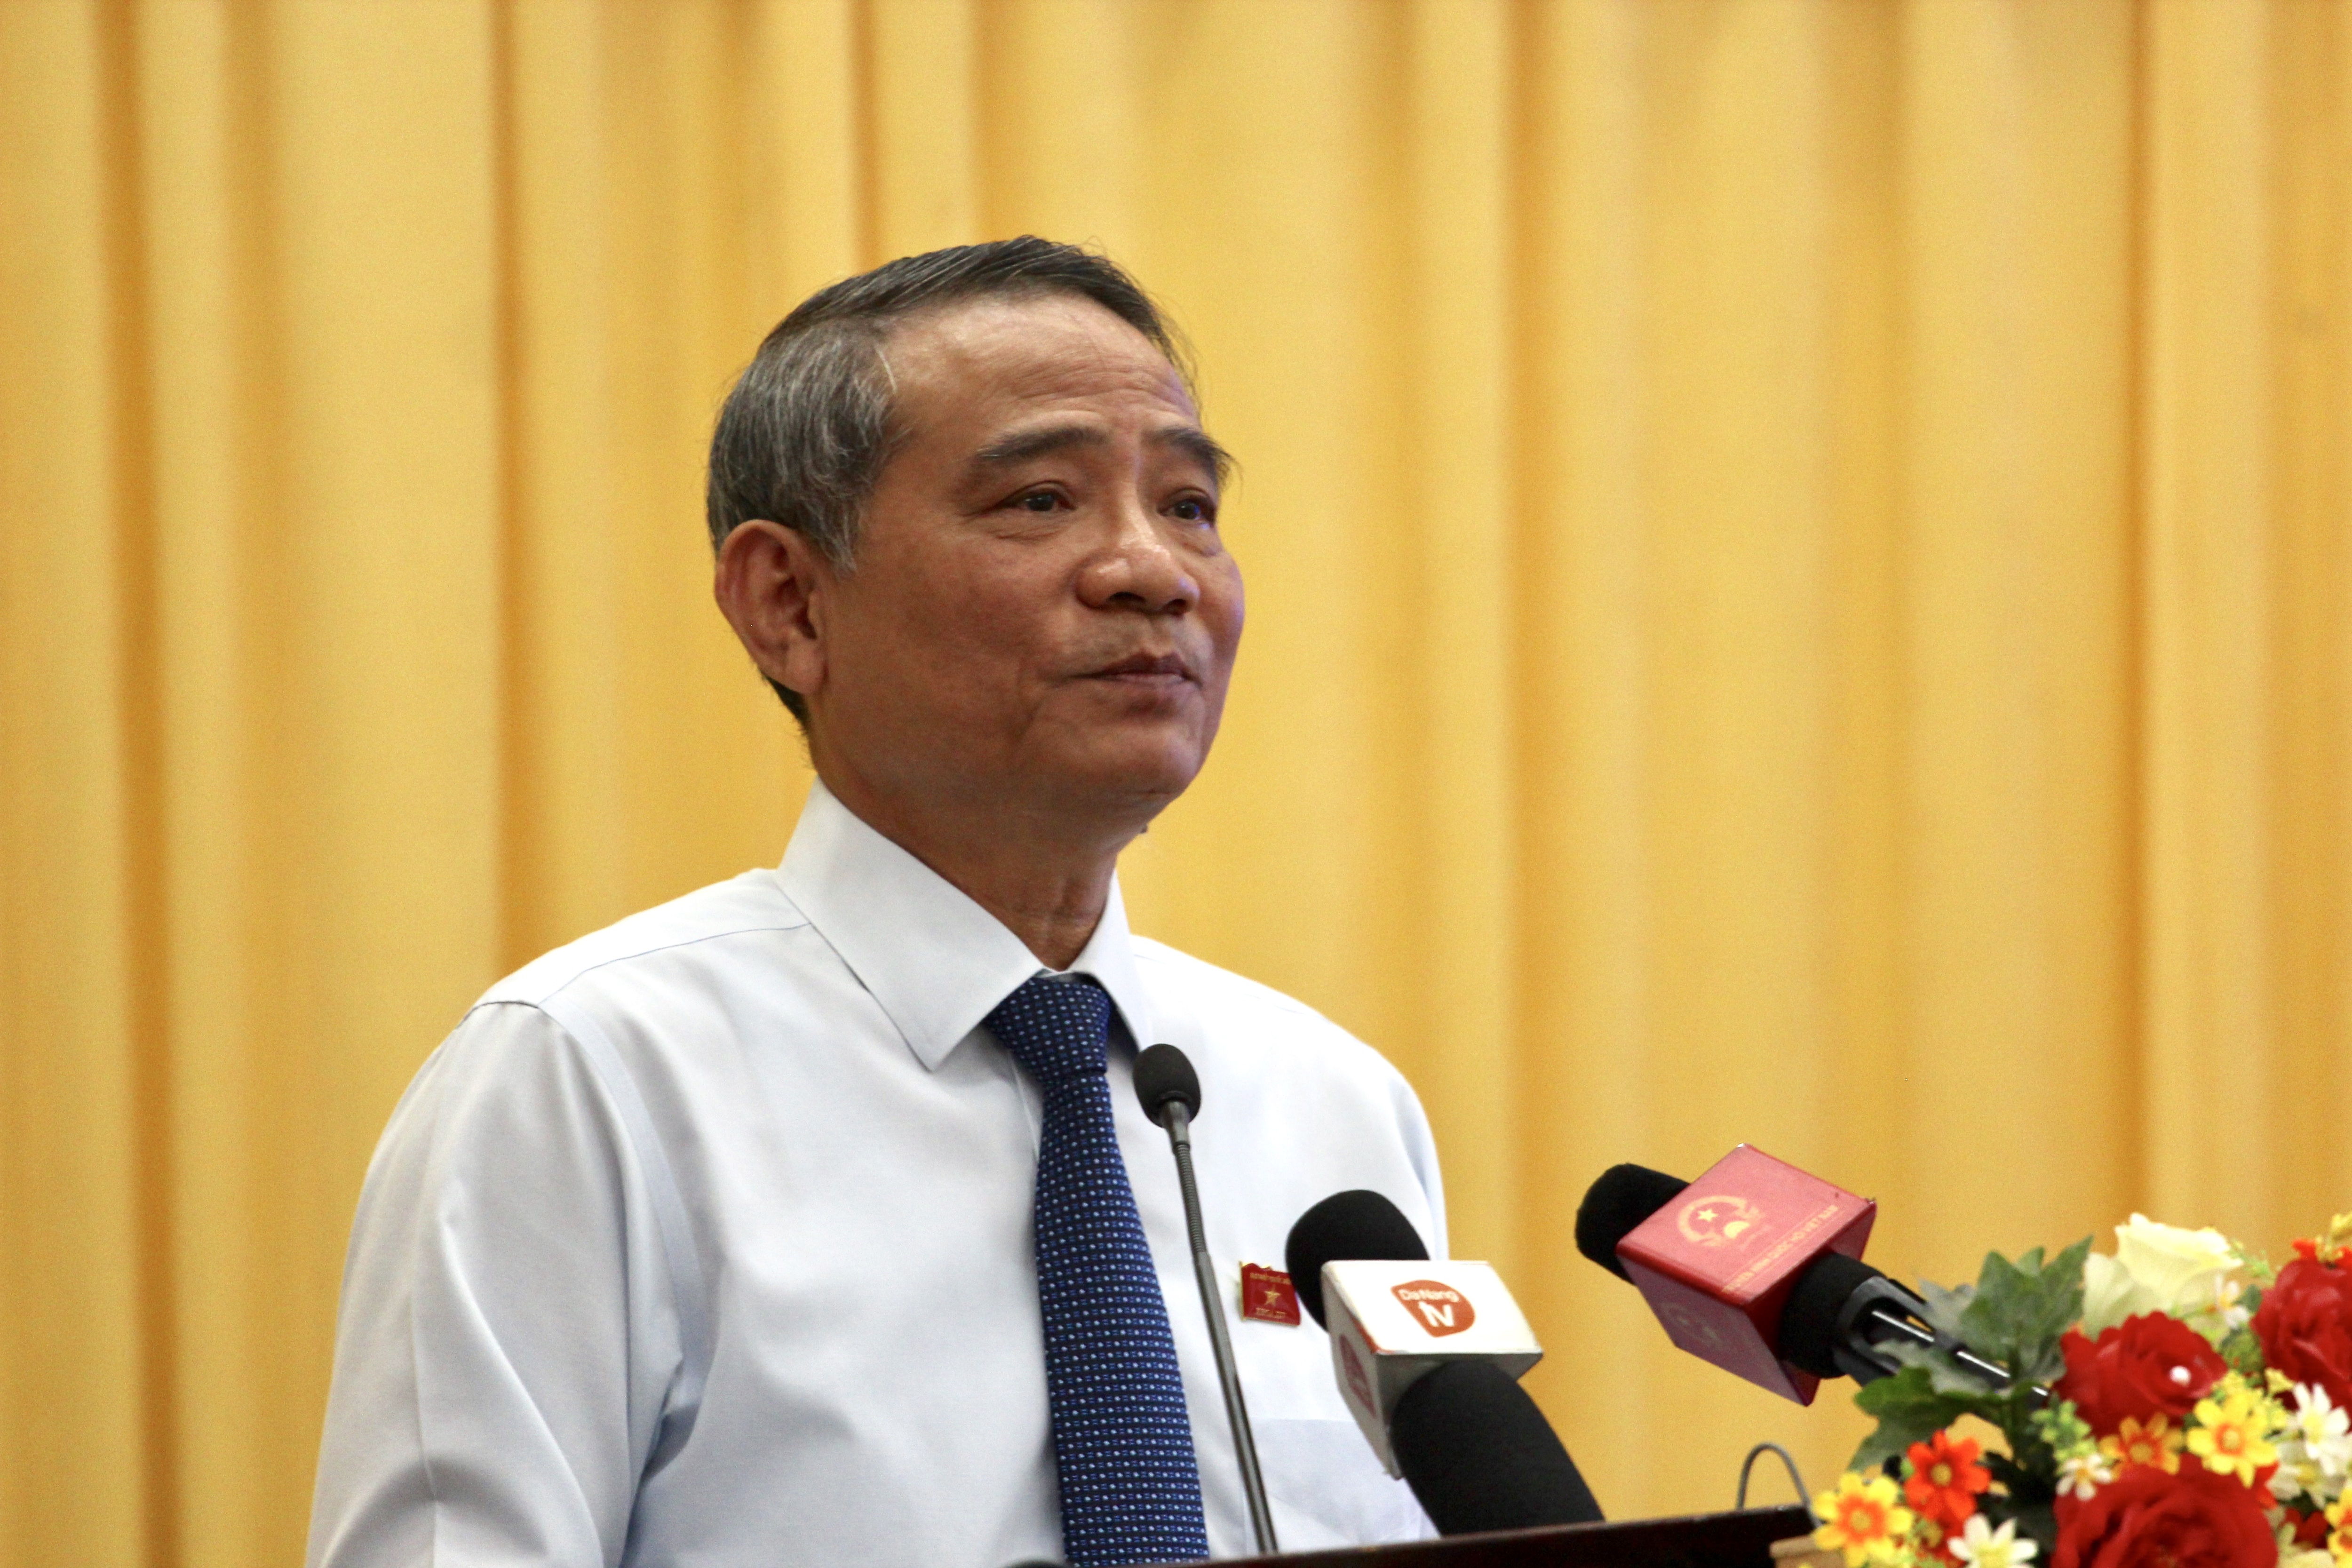 Bí thư Đà Nẵng nói về “con số thất thoát gây xót xa” liên quan 2 cựu Chủ tịch TP